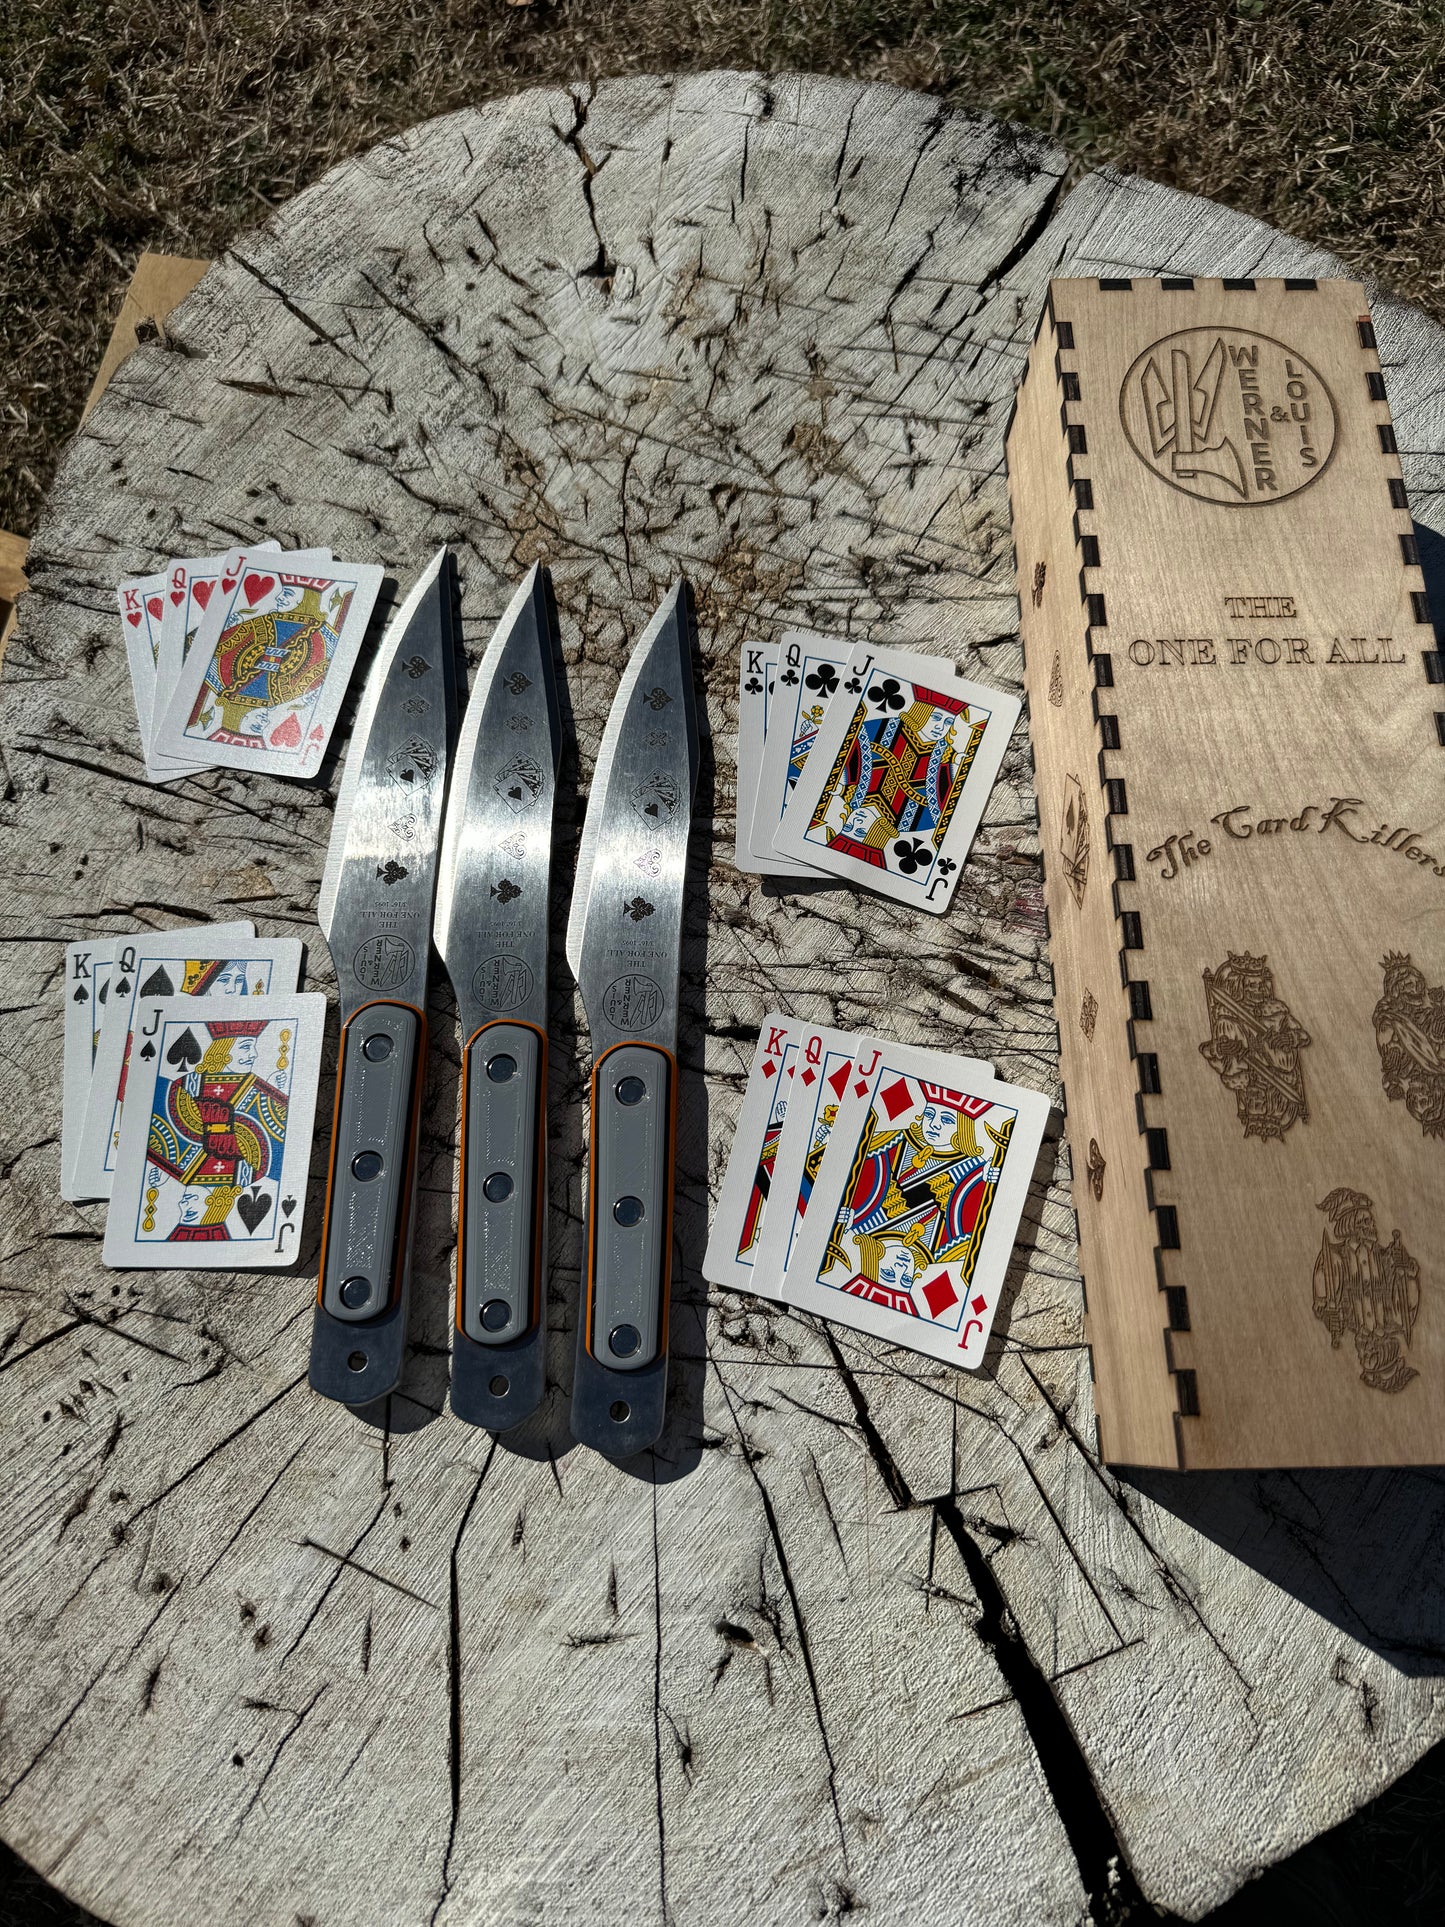 Custom "Card Killer" set of One For All's